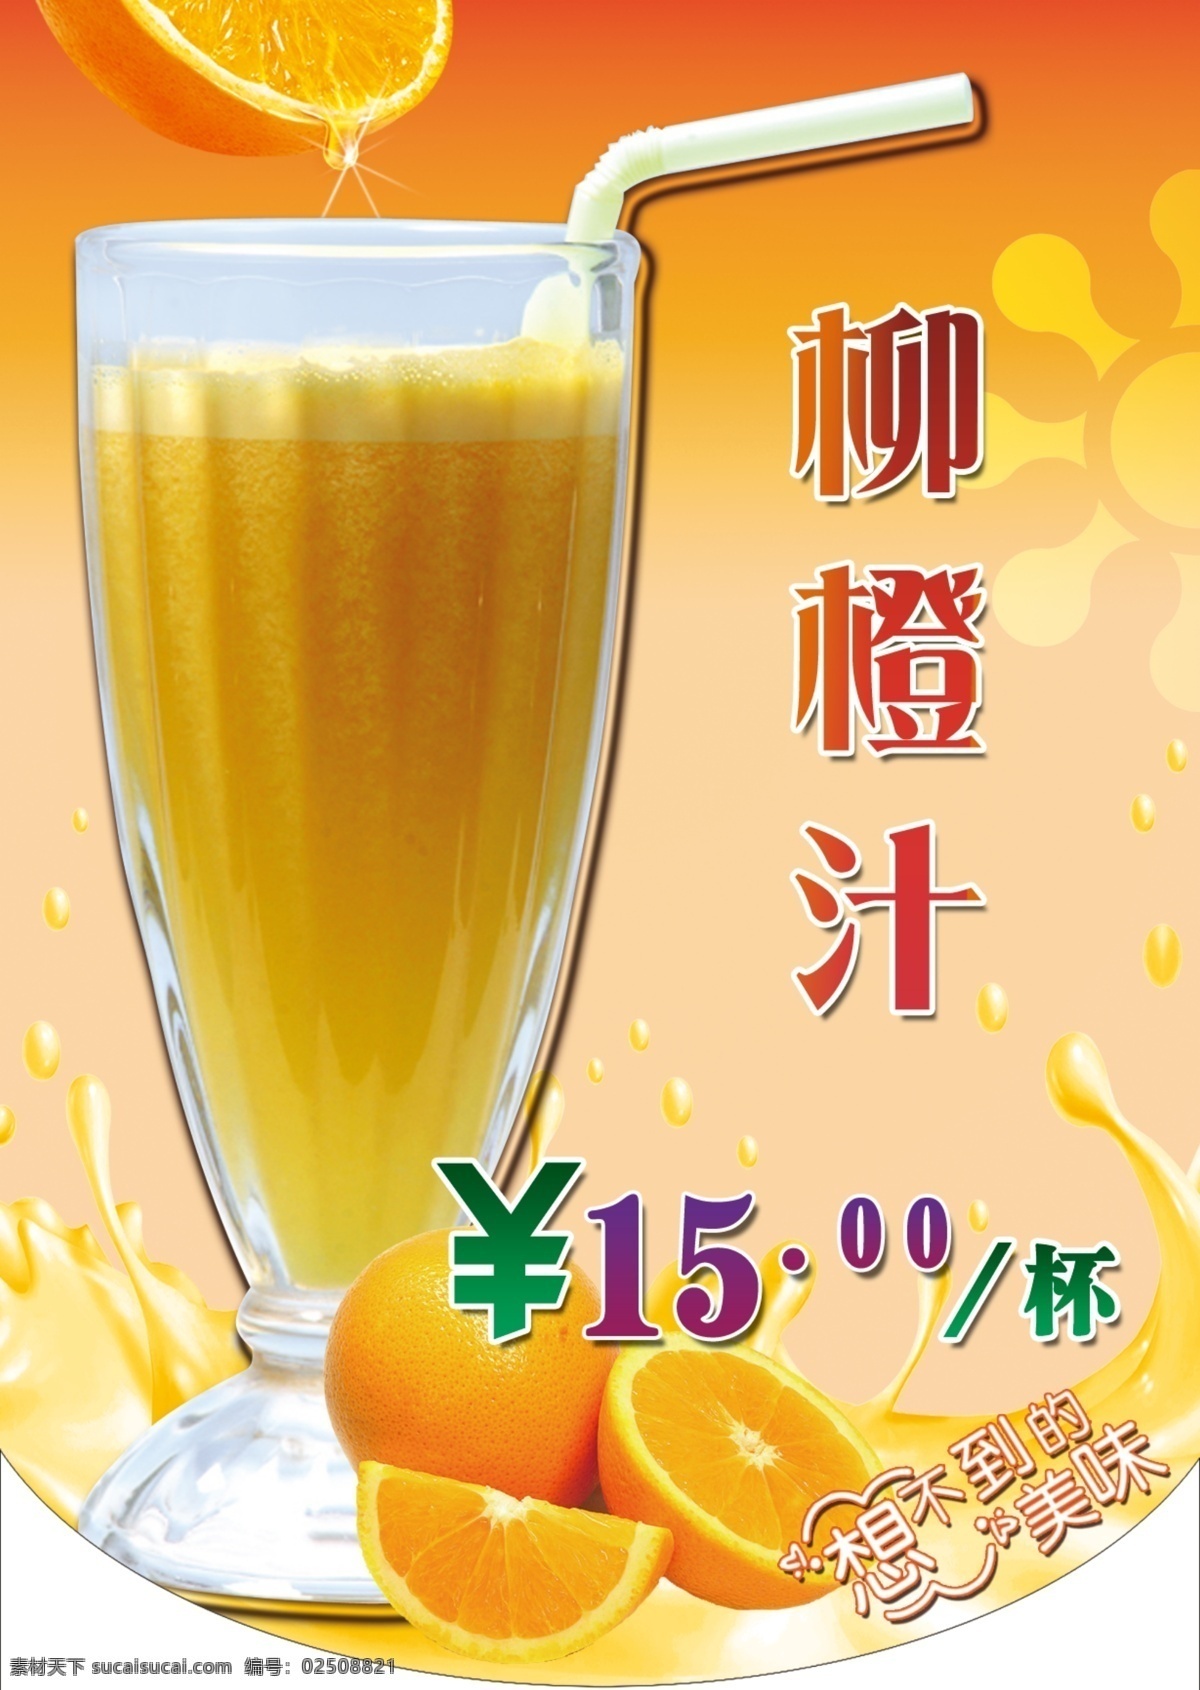 柳橙汁 黄色背景 橙子 奶茶杯 吸管 果汁液体水花 果汁 广告设计模板 源文件